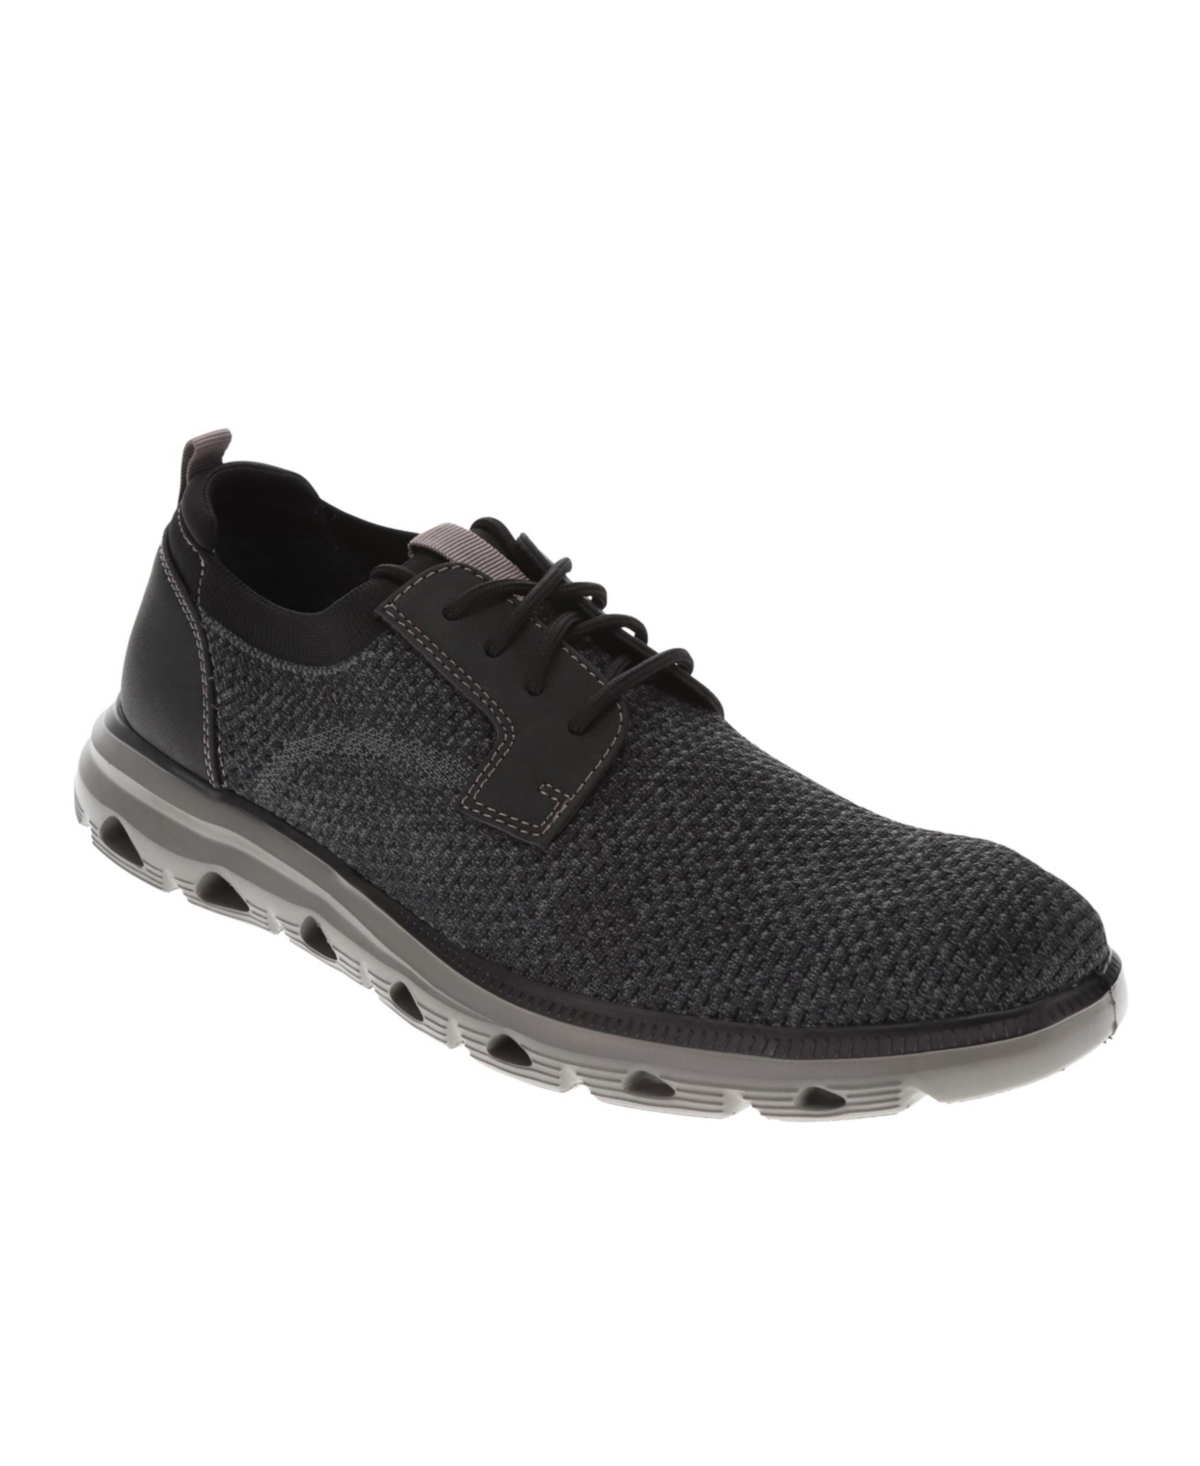 Dockers Men's Fielding Casual Oxford Shoes In Black,gray